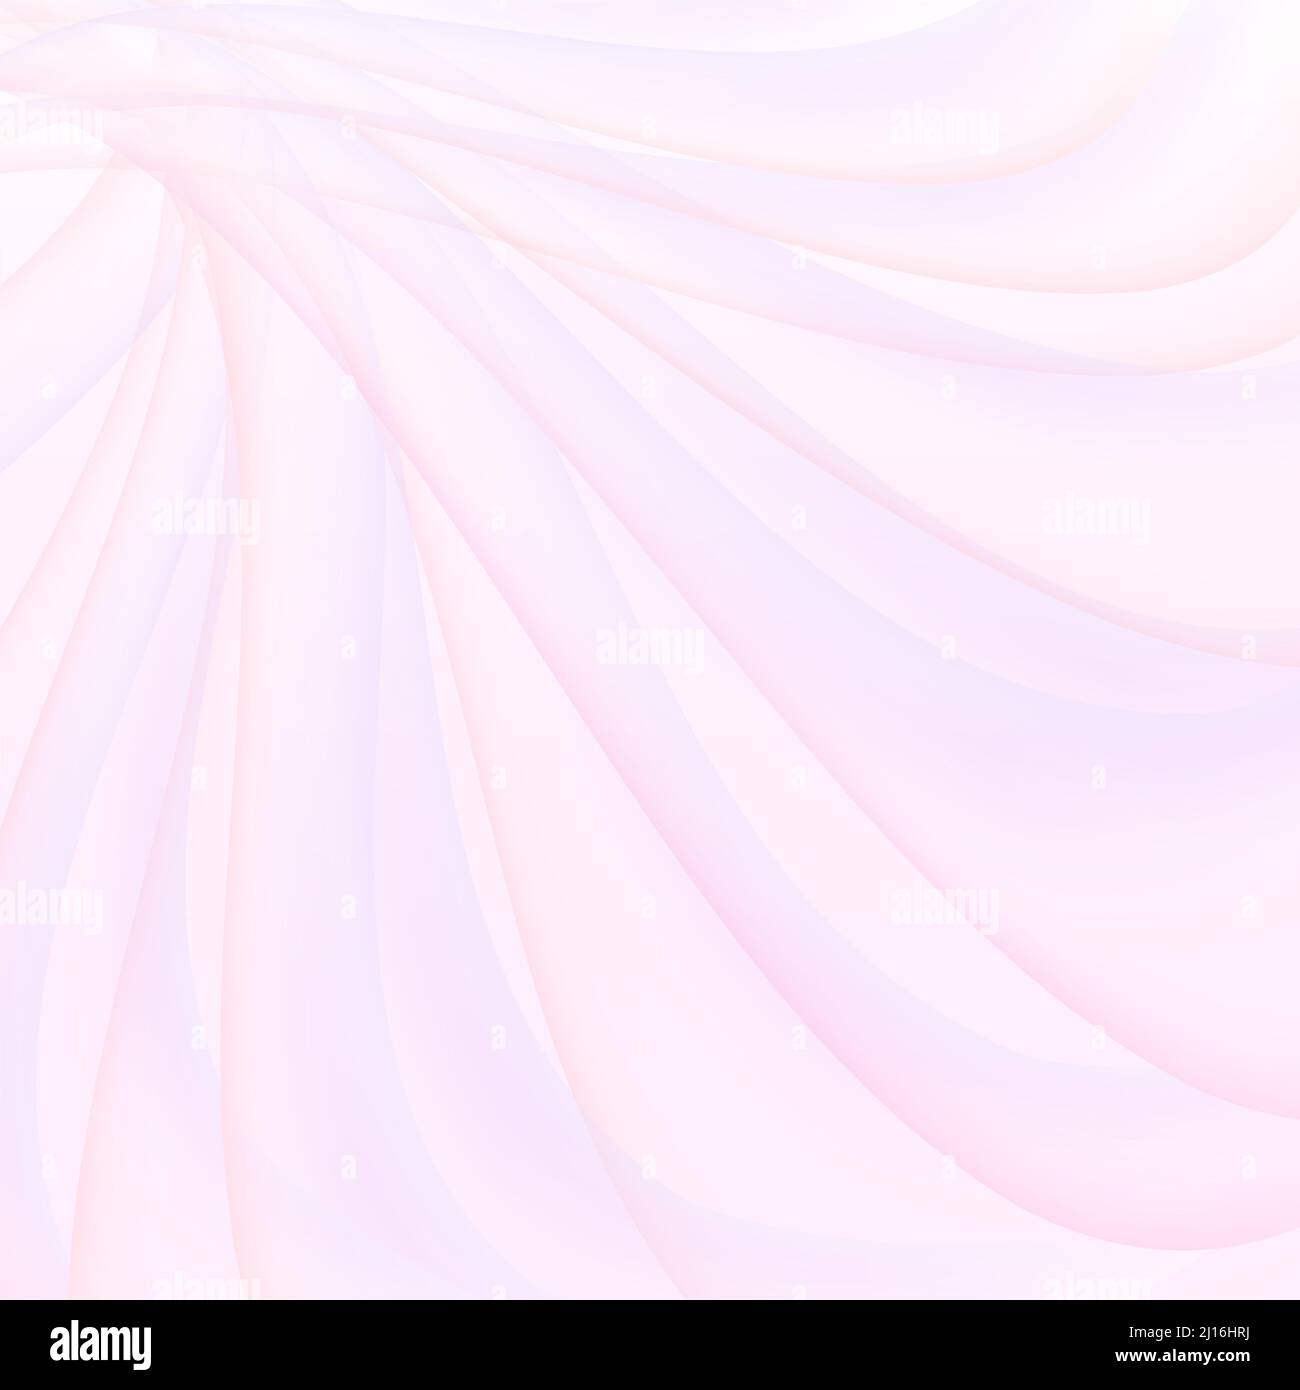 Hellrosa, lila geschwungene Linien. Transparente Streifen. Filigraner abstrakter Hintergrund. Weicher Farbverlauf. Wellendesign. Kunstkonzept Frühling, Urlaub Stockfoto